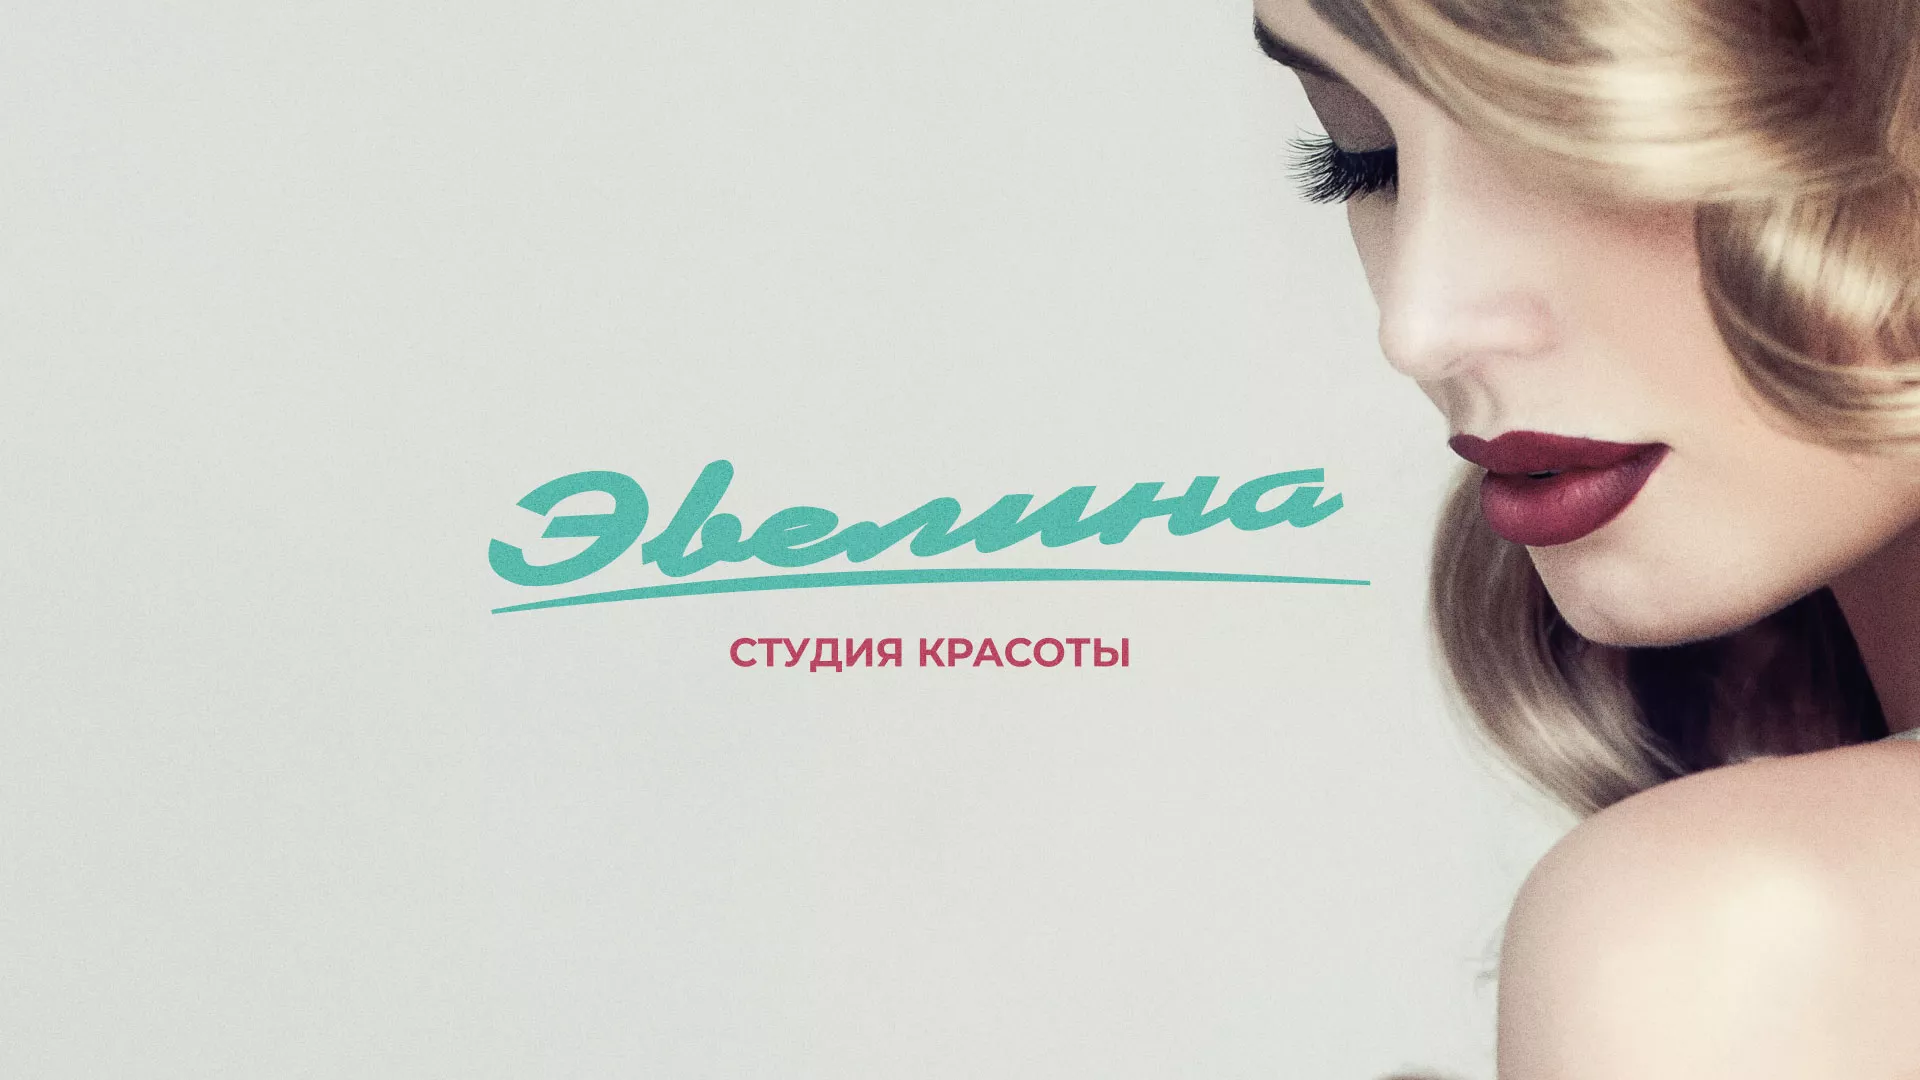 Разработка сайта для салона красоты «Эвелина» в Омутнинске